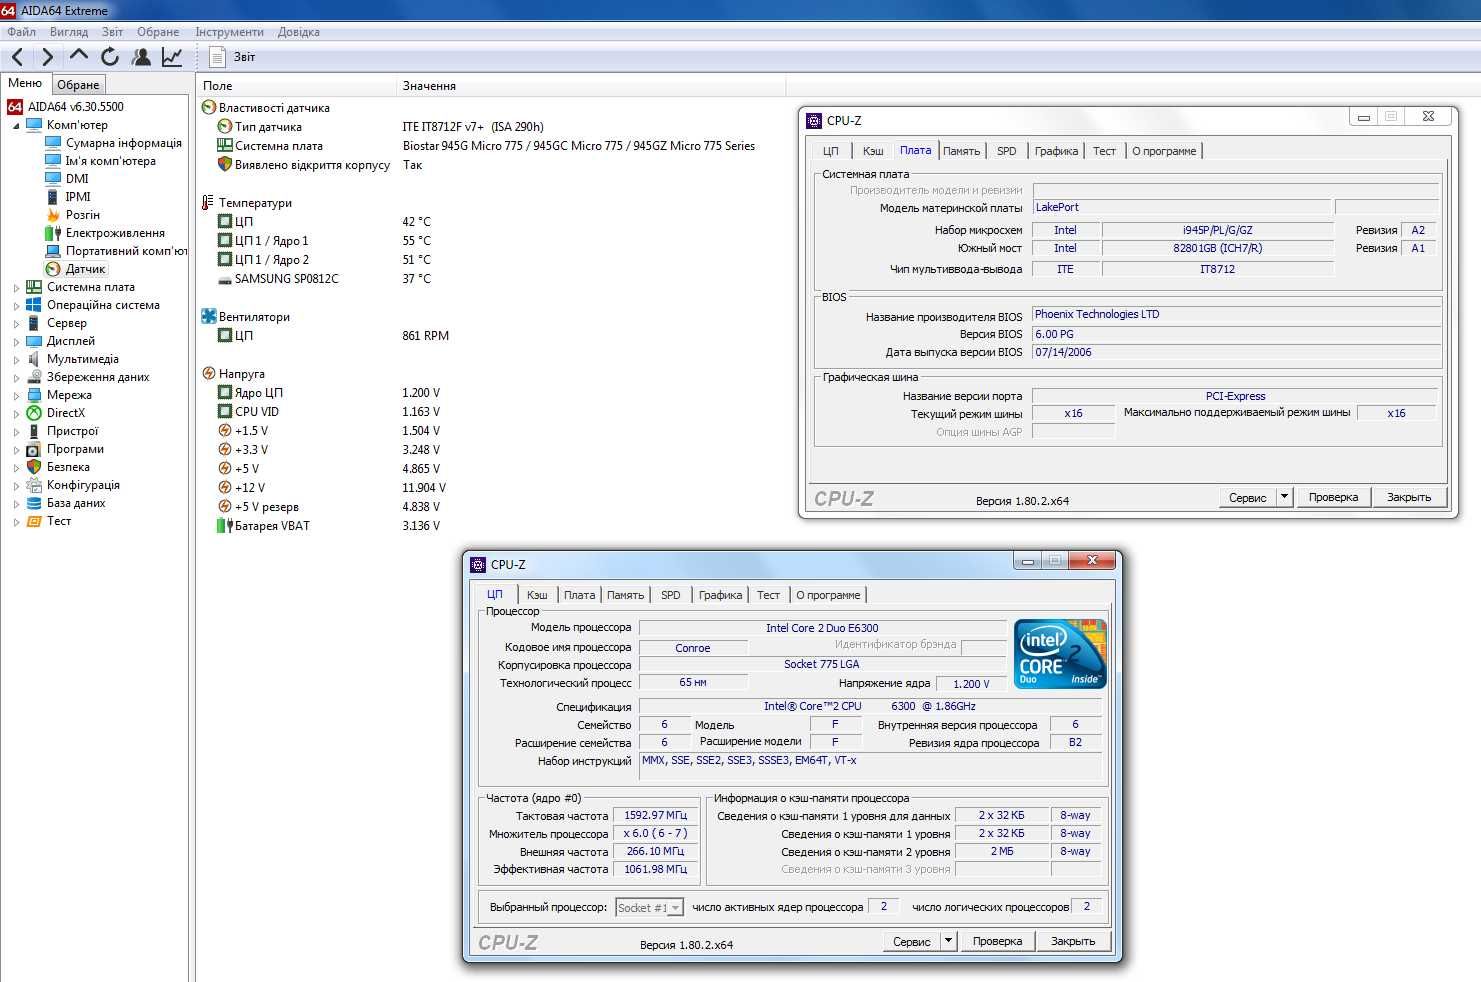 Biostar 945G Micro 775 SE + Intel Core 2 Duo E6300 (два ядра) Тест ОК